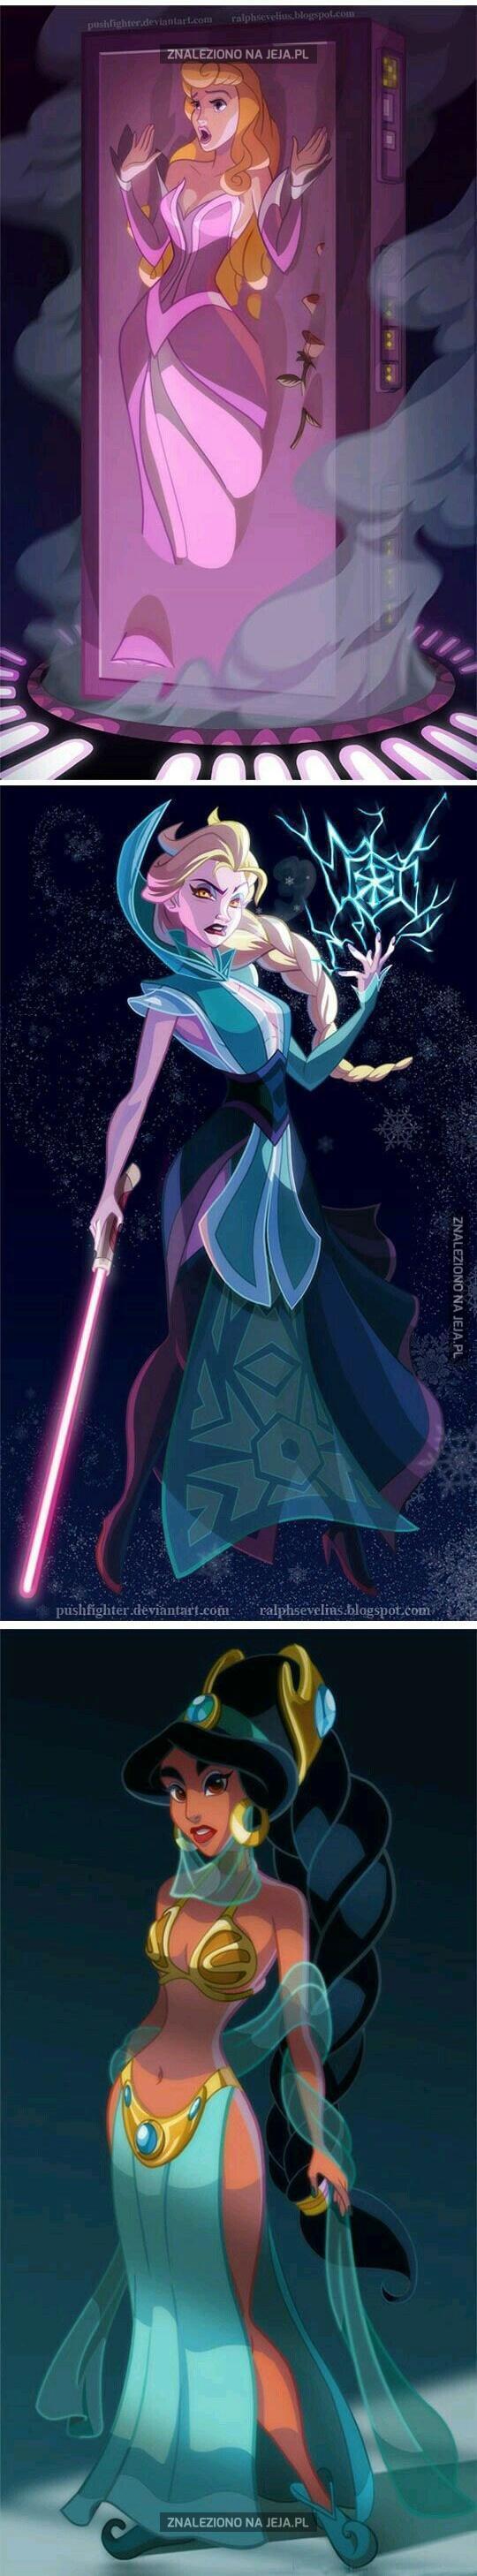 Księżniczki Disneya w Gwiezdnych Wojnach